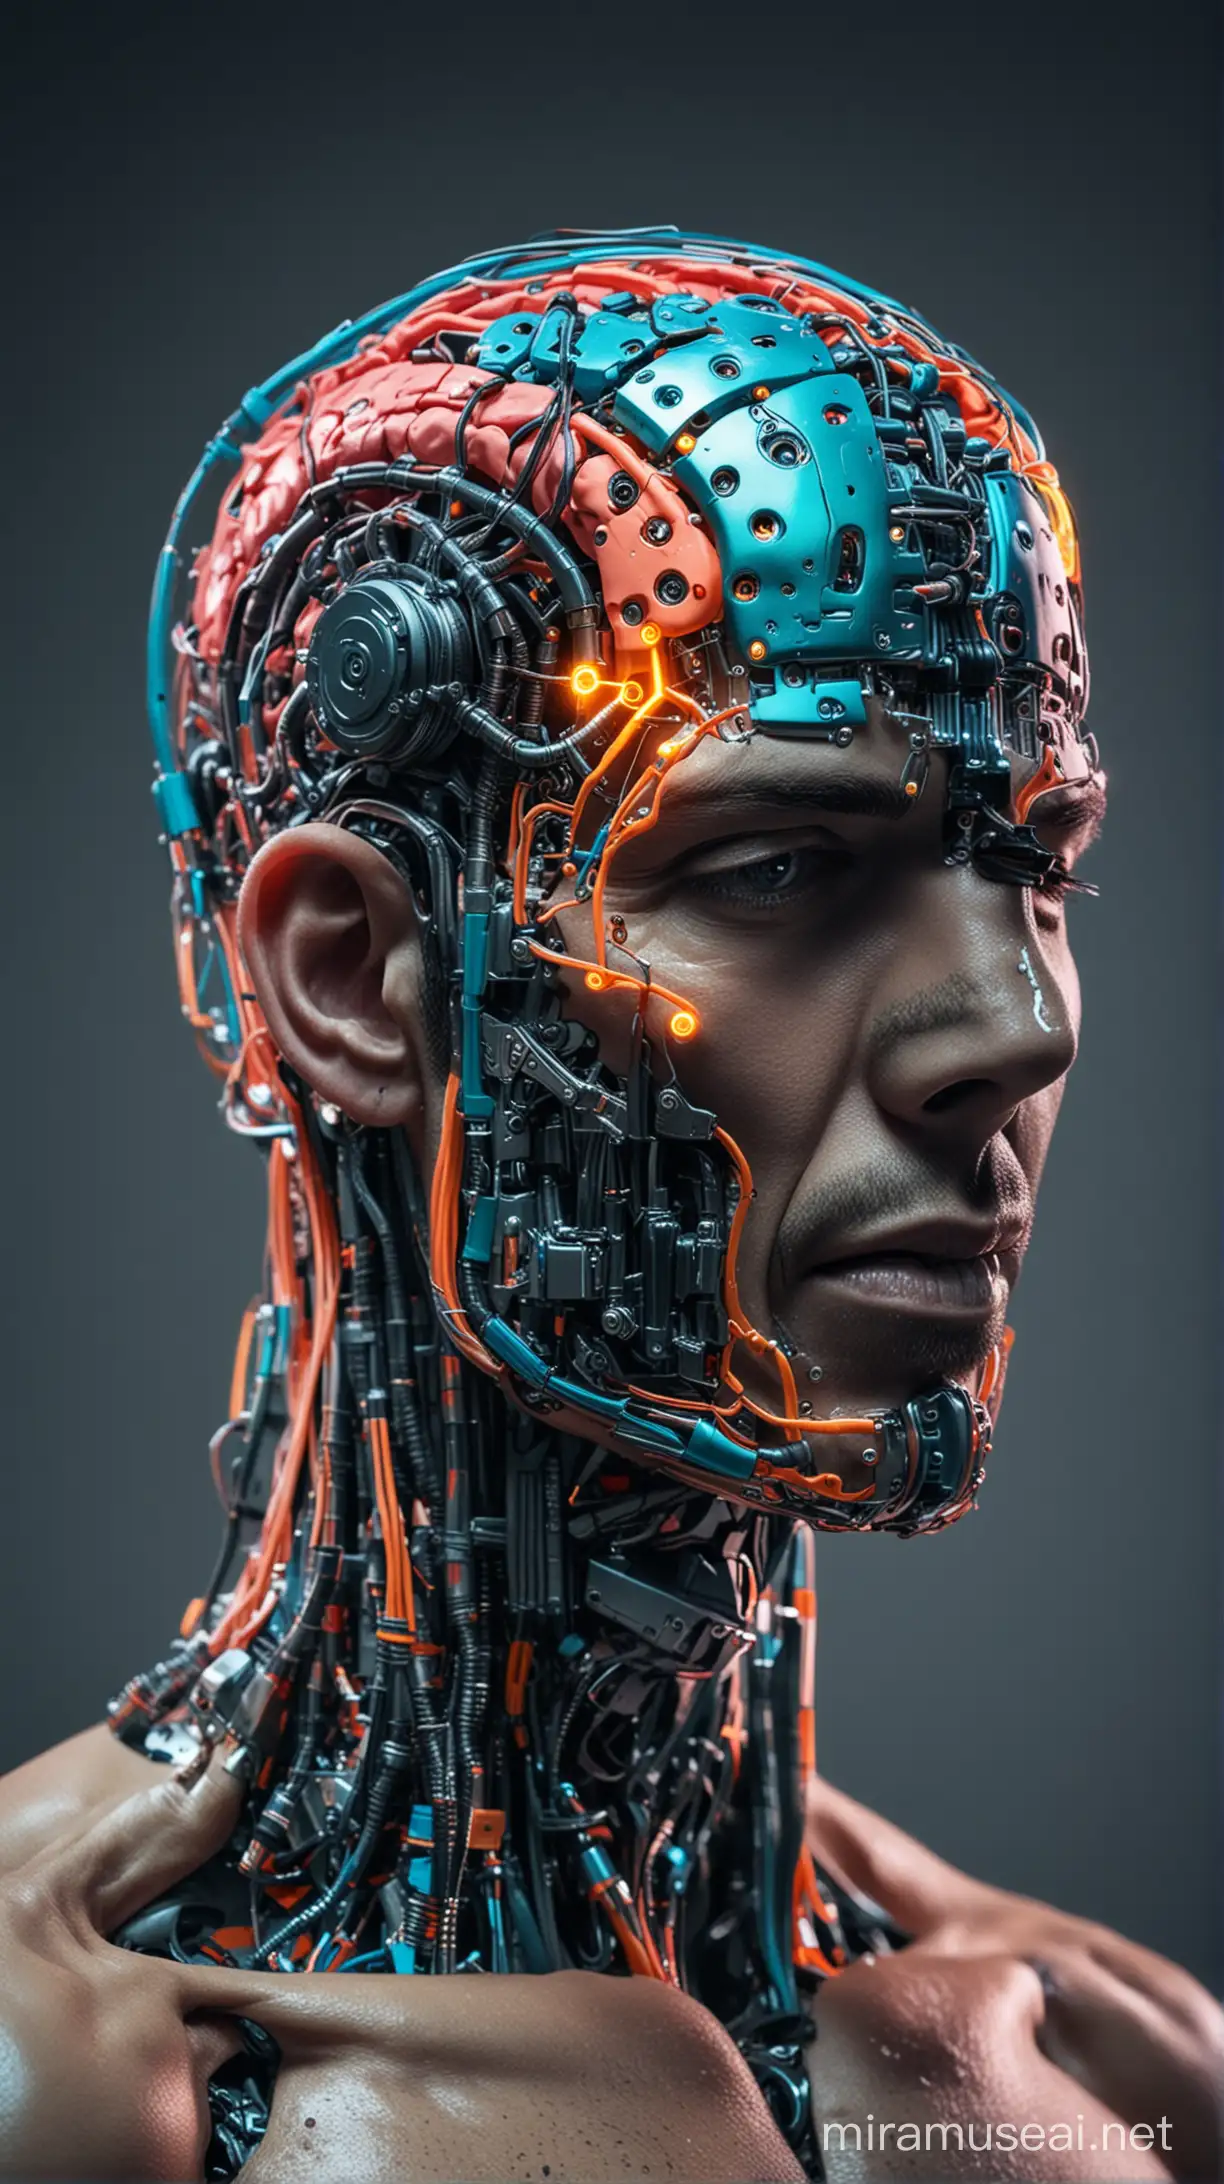 Neon Robotic Brain Implant Futuristic Man with Metallic Features